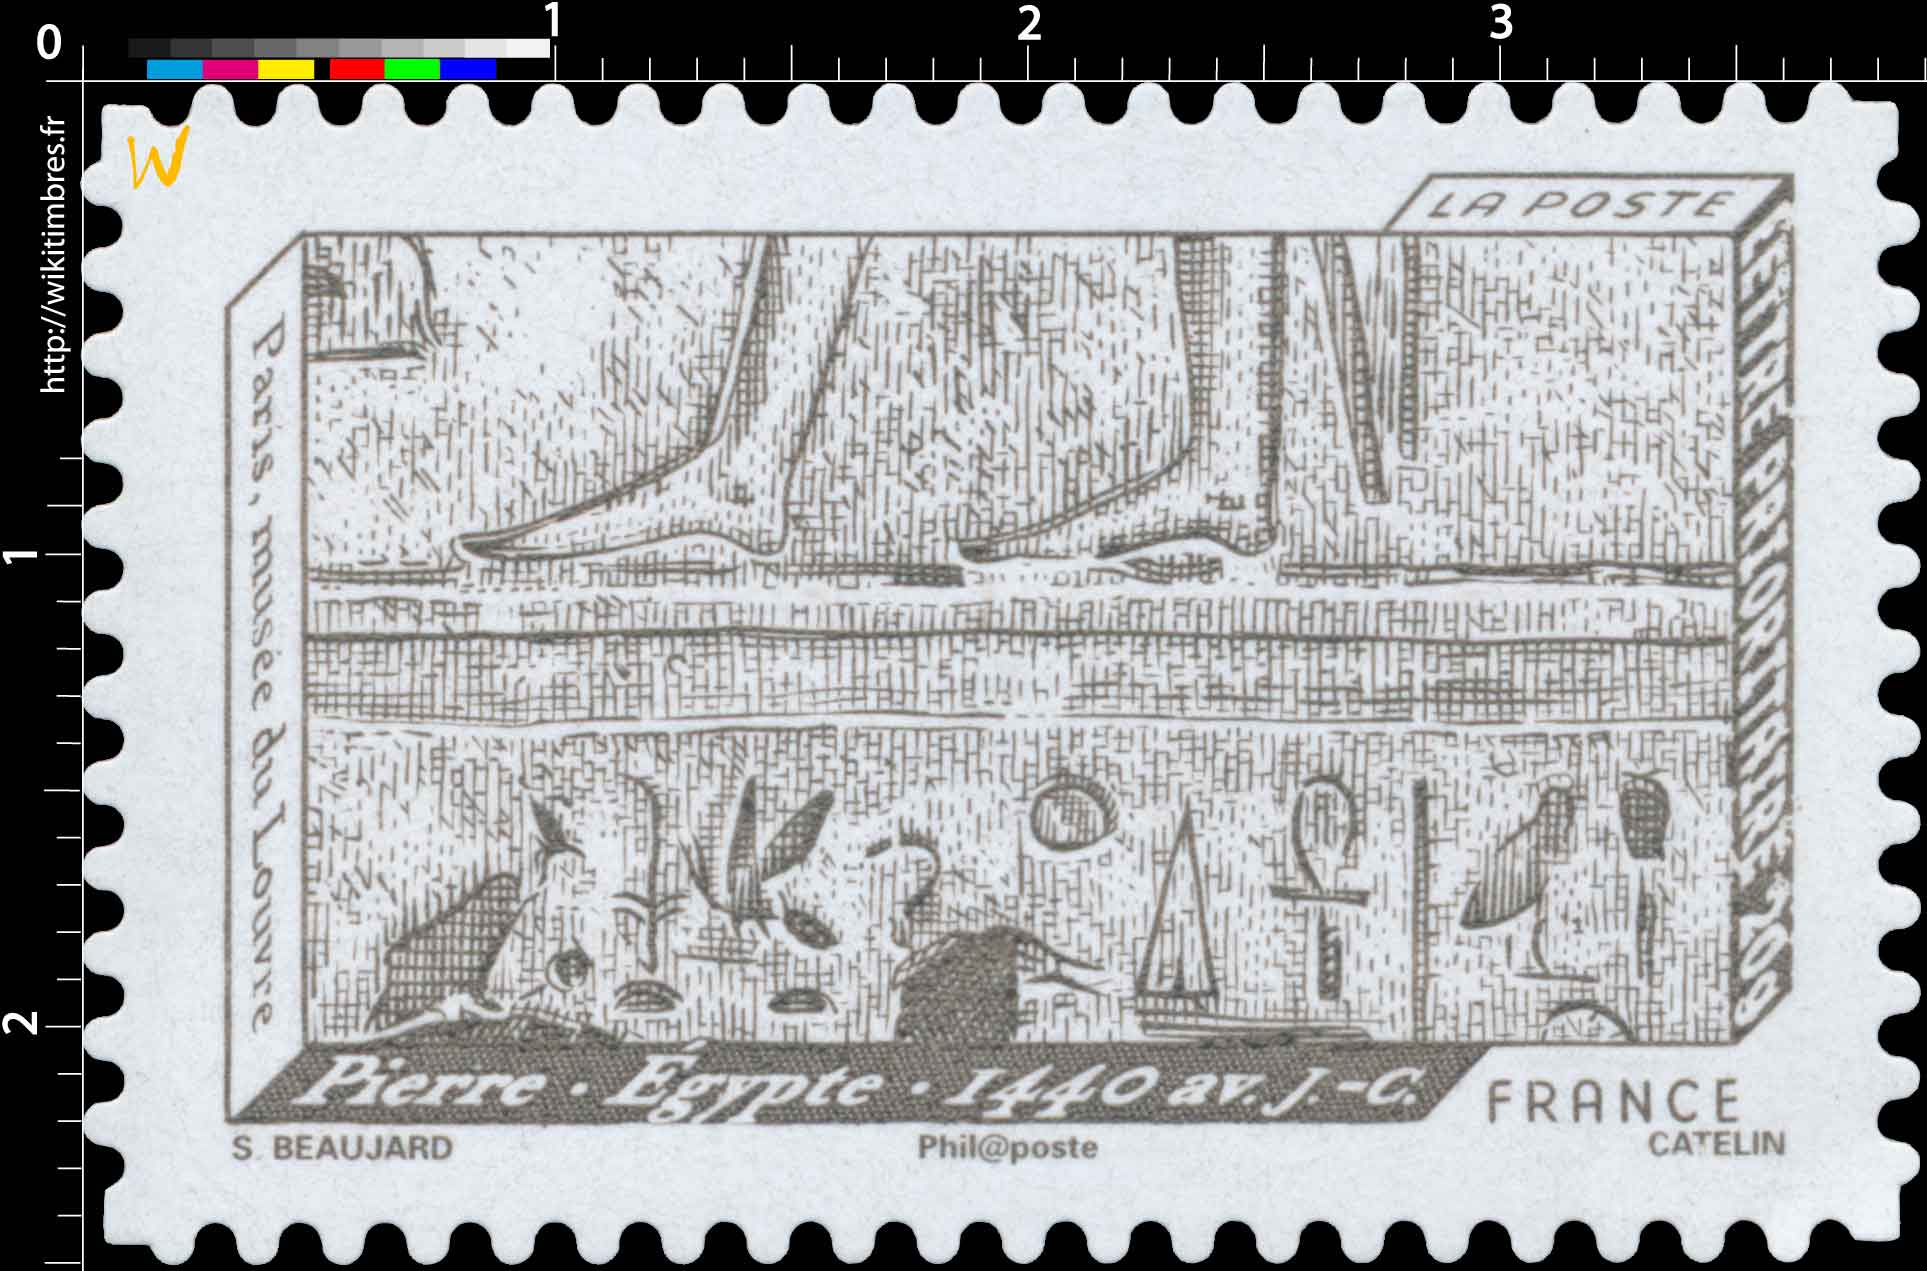 Pierre . Égypte . 1440 av. J.-C. Paris musée du Louvre